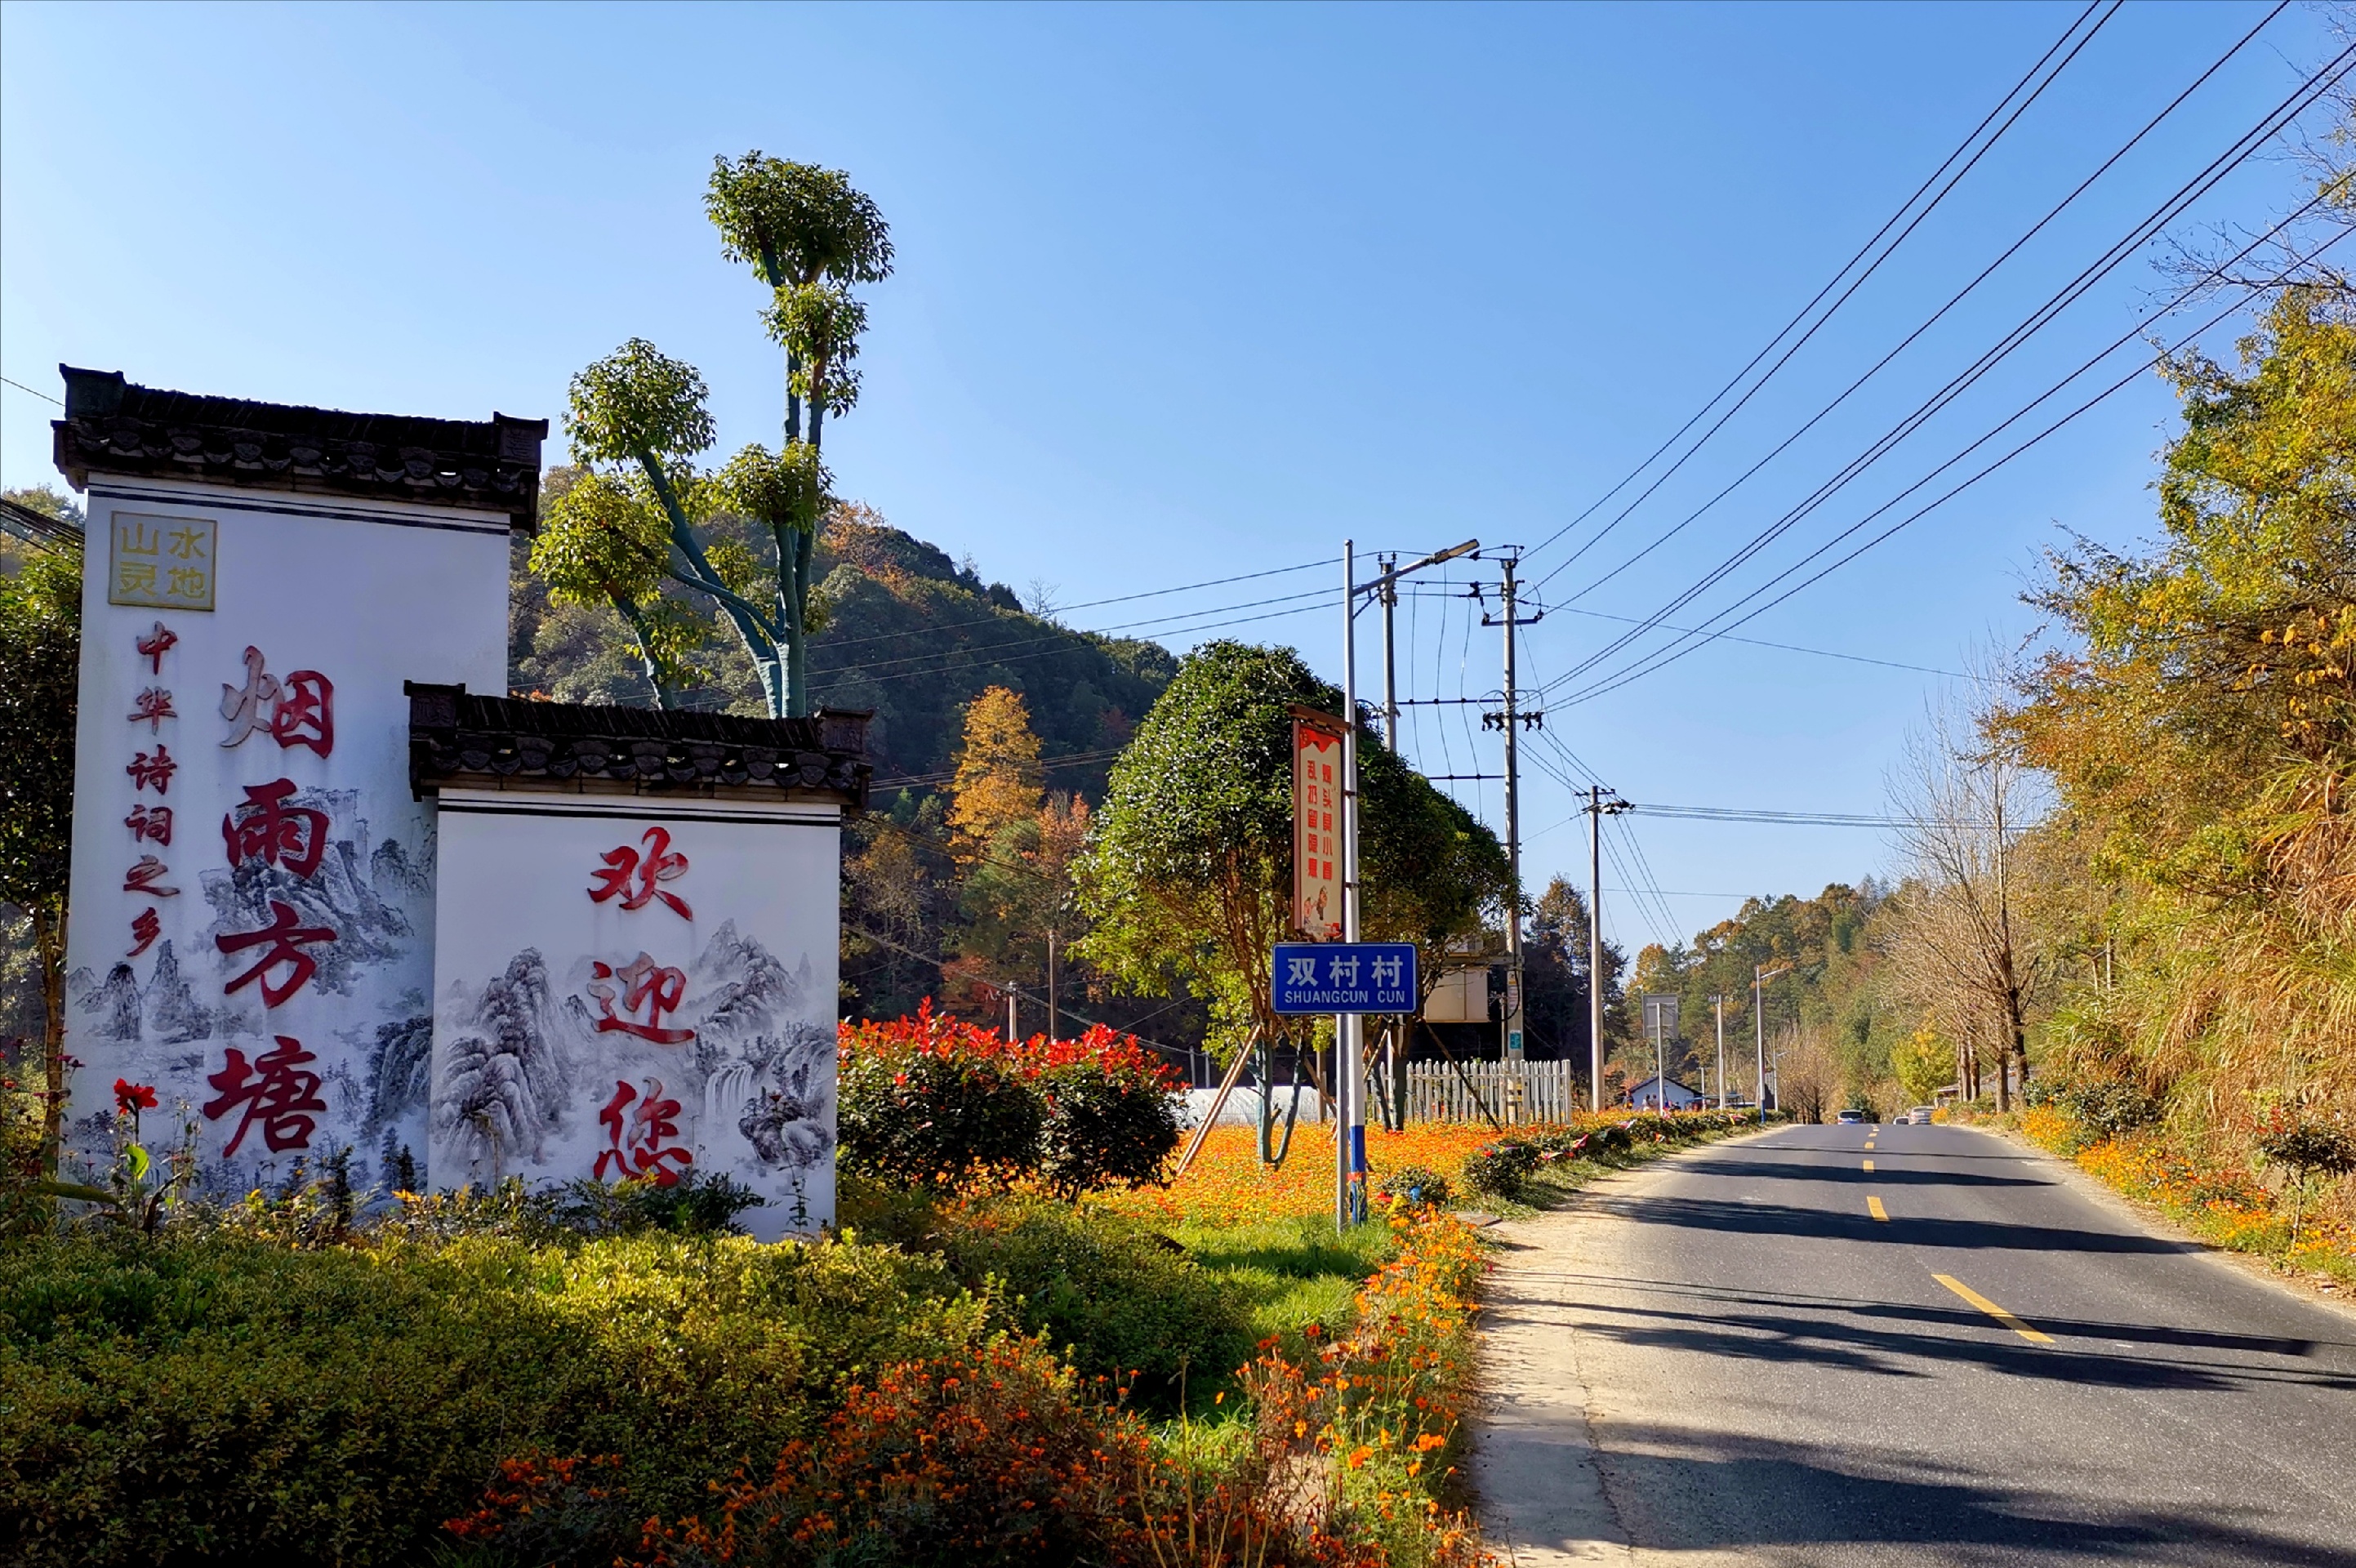 皖南川藏线又称“江南天路”，东起宁国市的青龙乡，西至泾县的蔡村镇，全长120公里左右